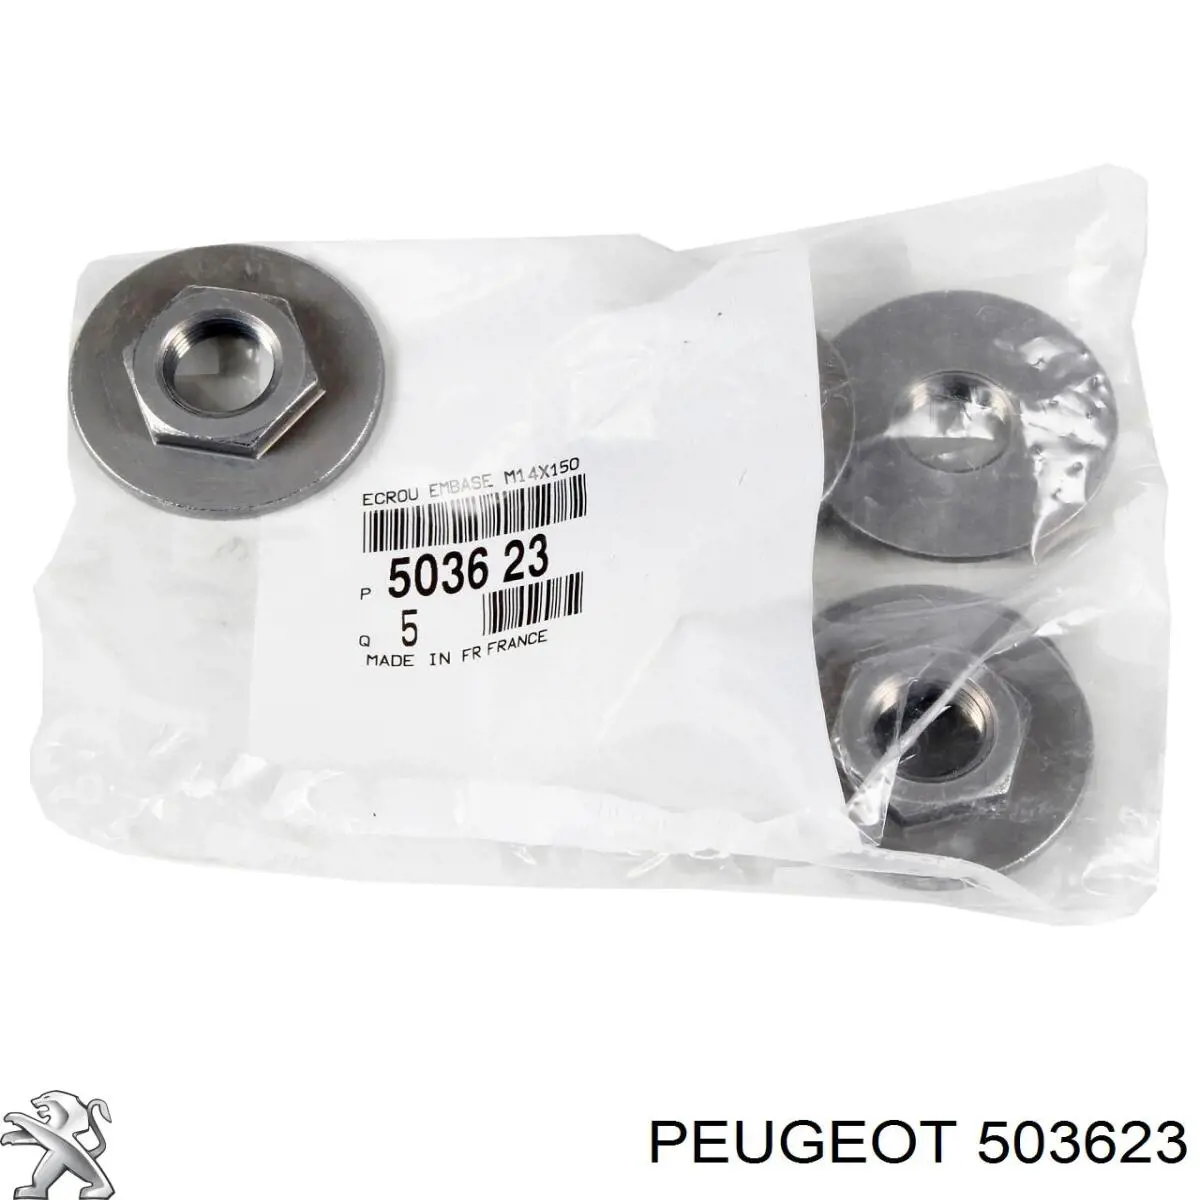 503623 Peugeot/Citroen arruela de bucha da haste de amortecedor dianteiro